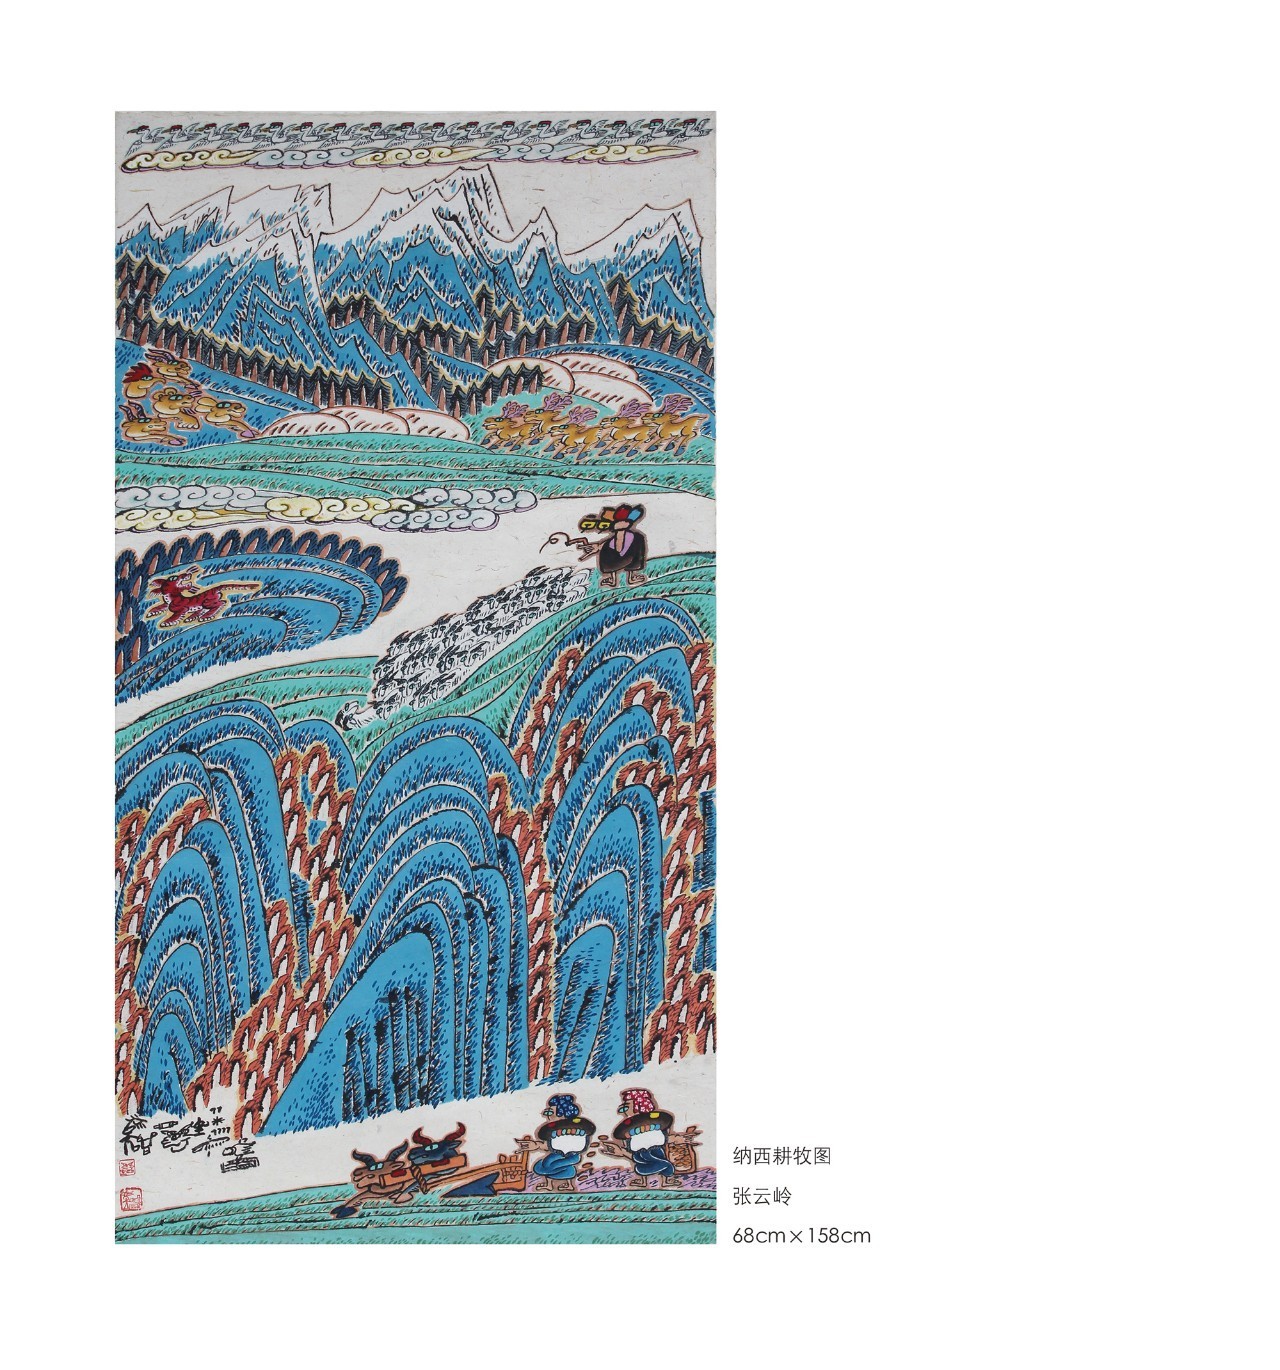 丽江文化知道纳西族东巴画吗有个百年艺术展叫你去看